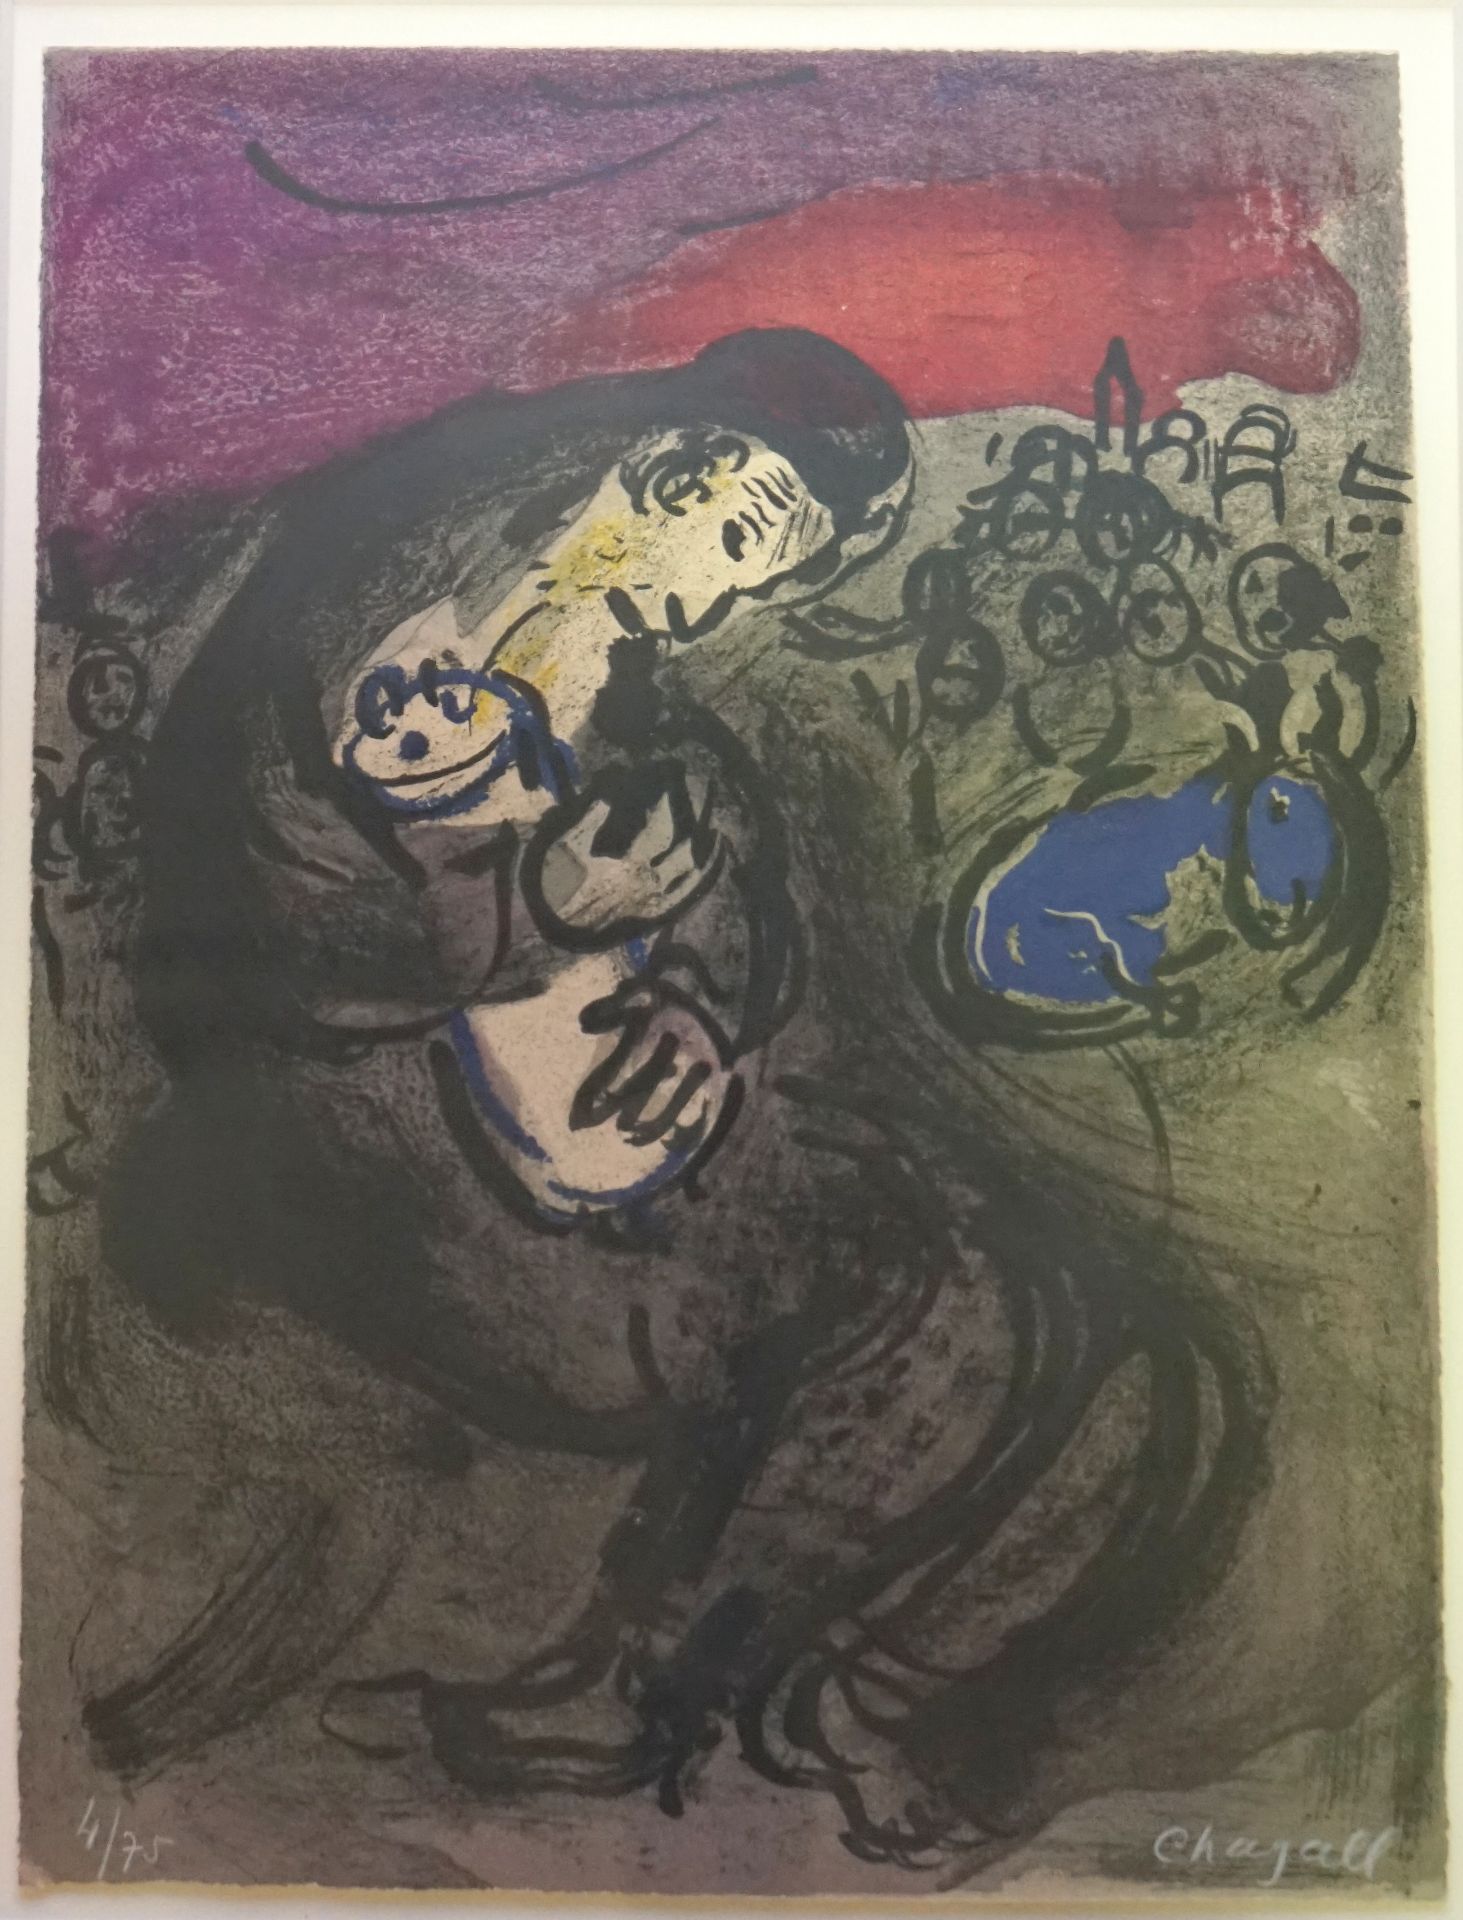 Chagall, Marc (1887Peskowatik-1985 Saint-Paul-de-Vence): "Les Pleurs de Jeremie",Original